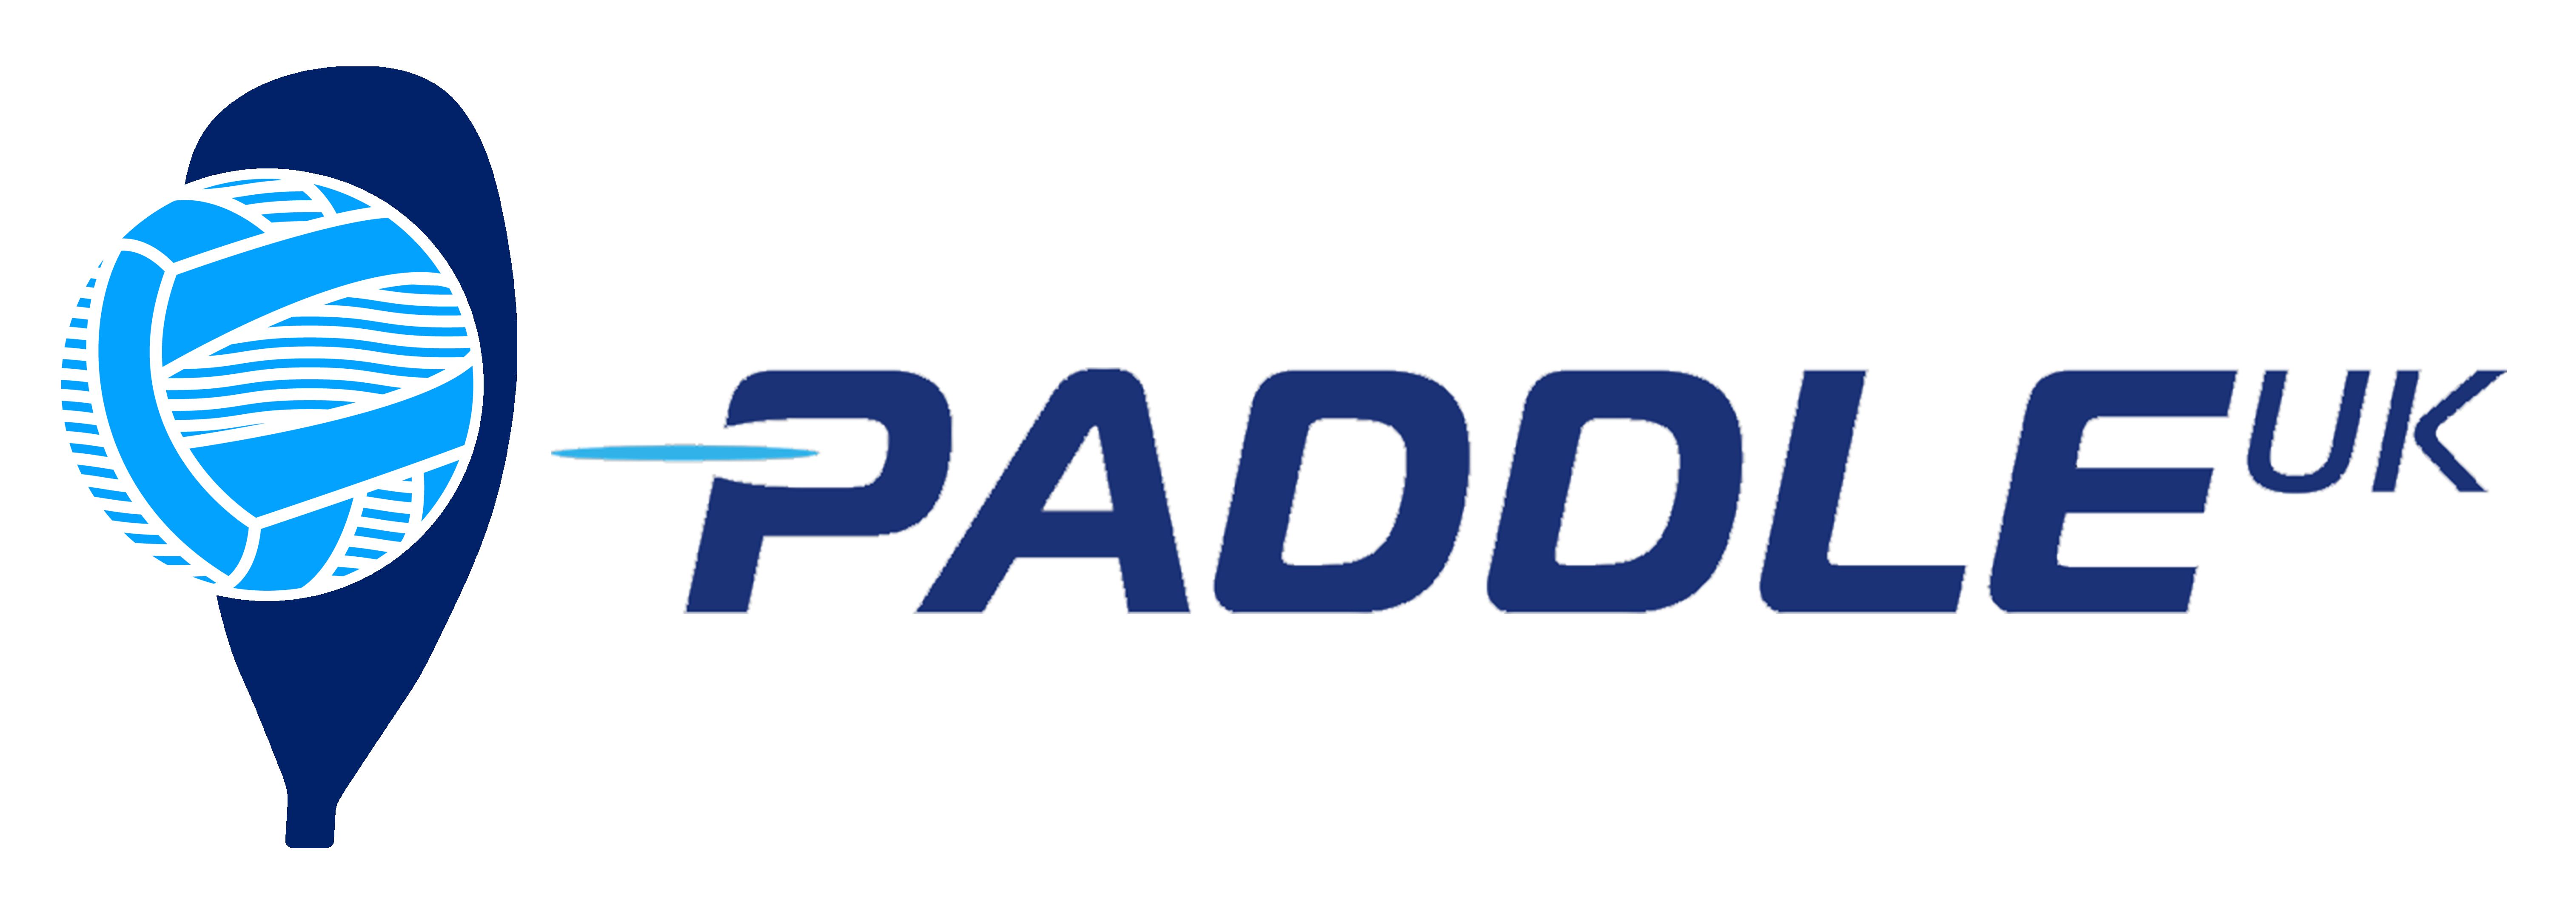 Paddle UK – Polo